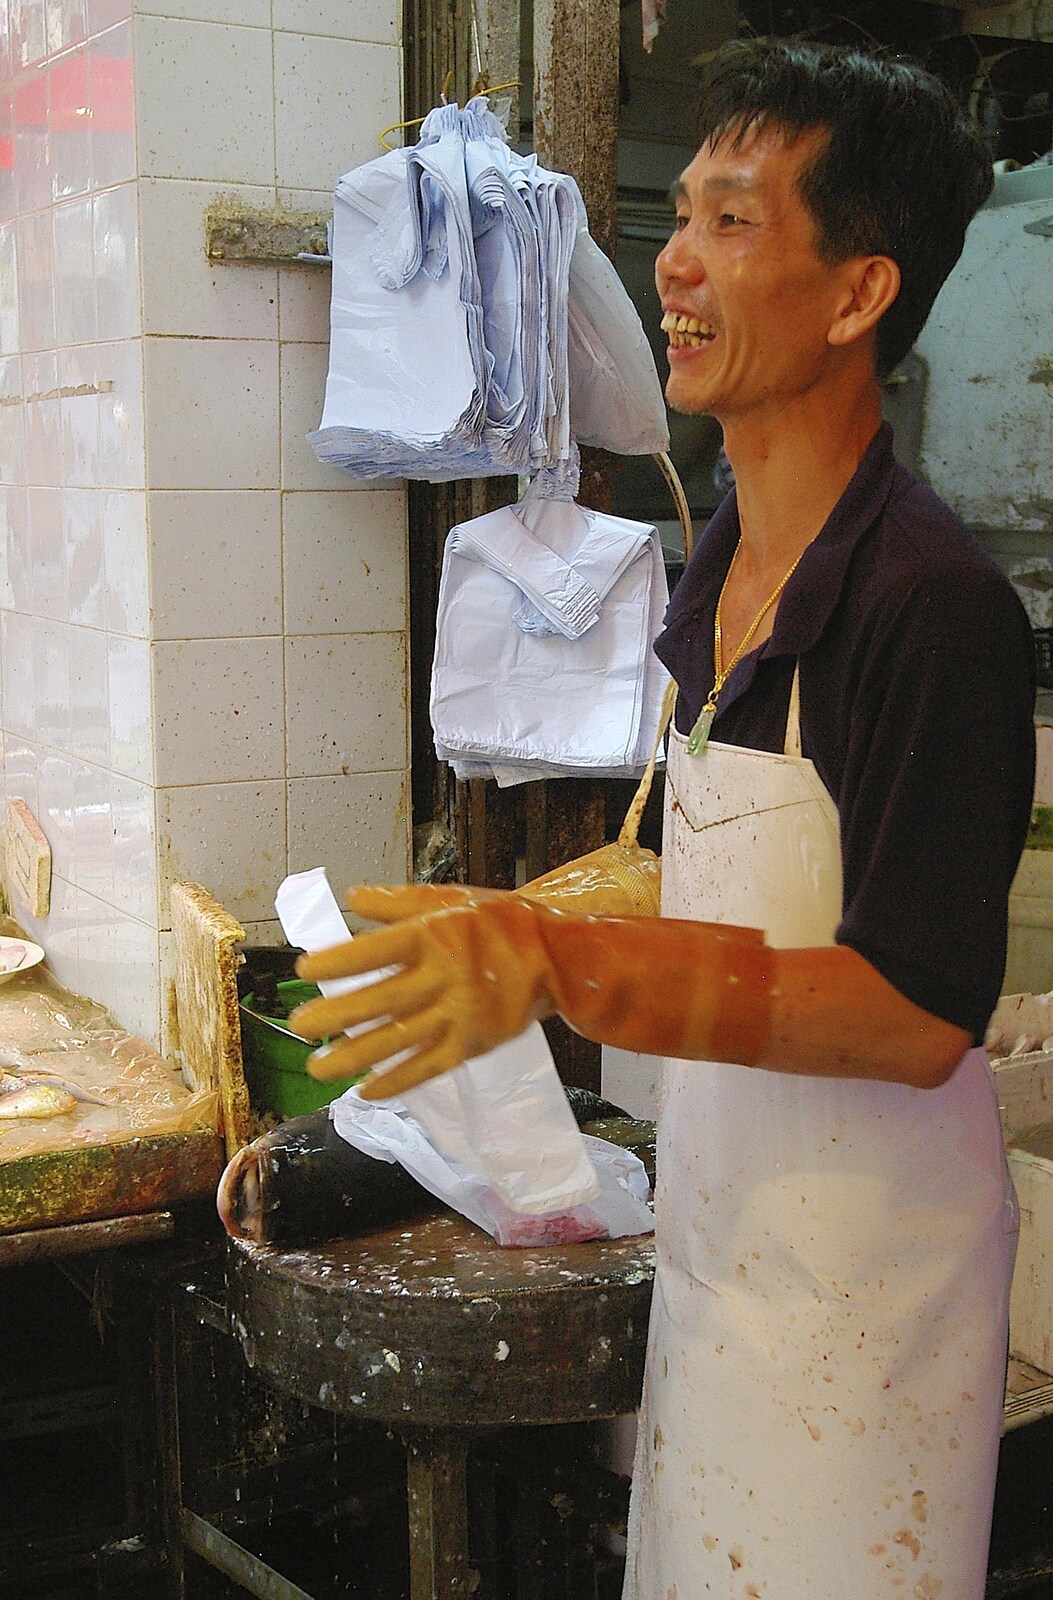 The fishmonger from Lan Kwai Fong Market, Hong Kong, China - 4th October 2006